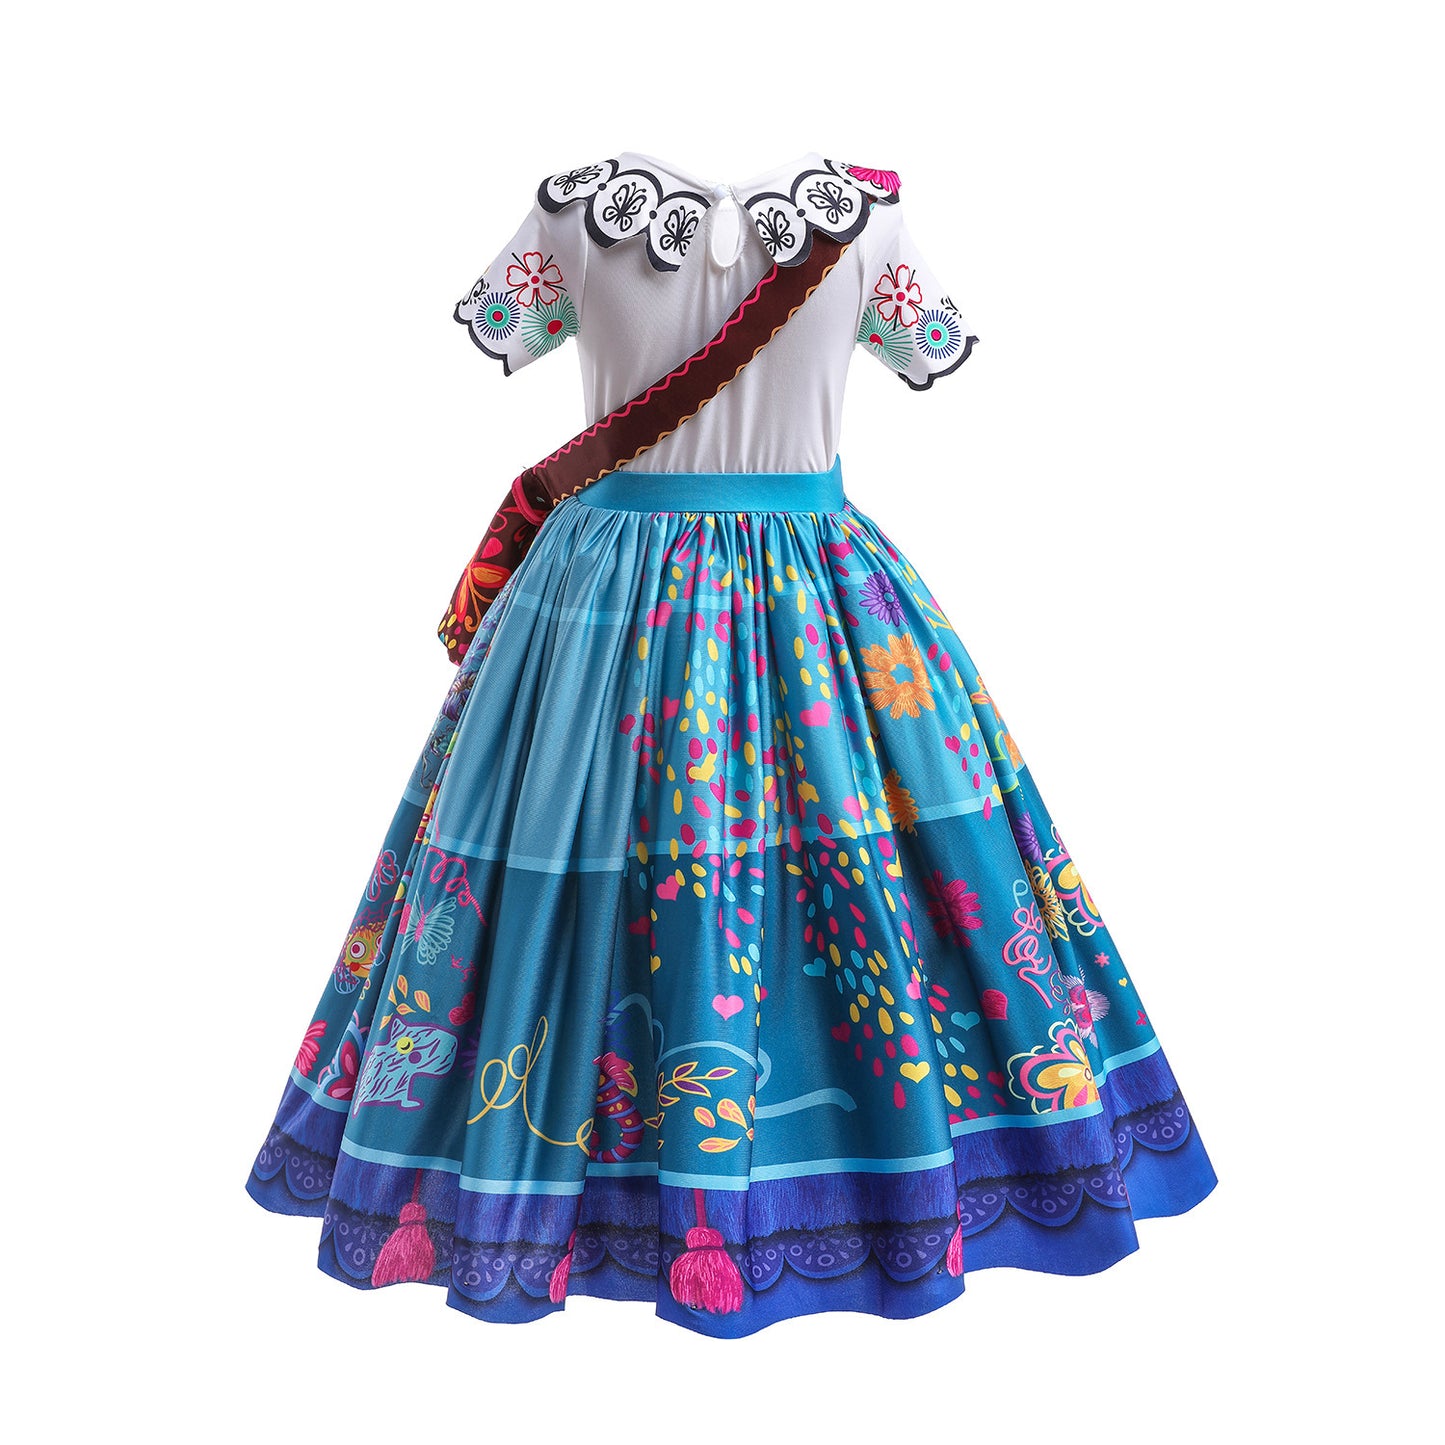 Encanto Gown Dress-Up Set MIRABEL ISABELLA